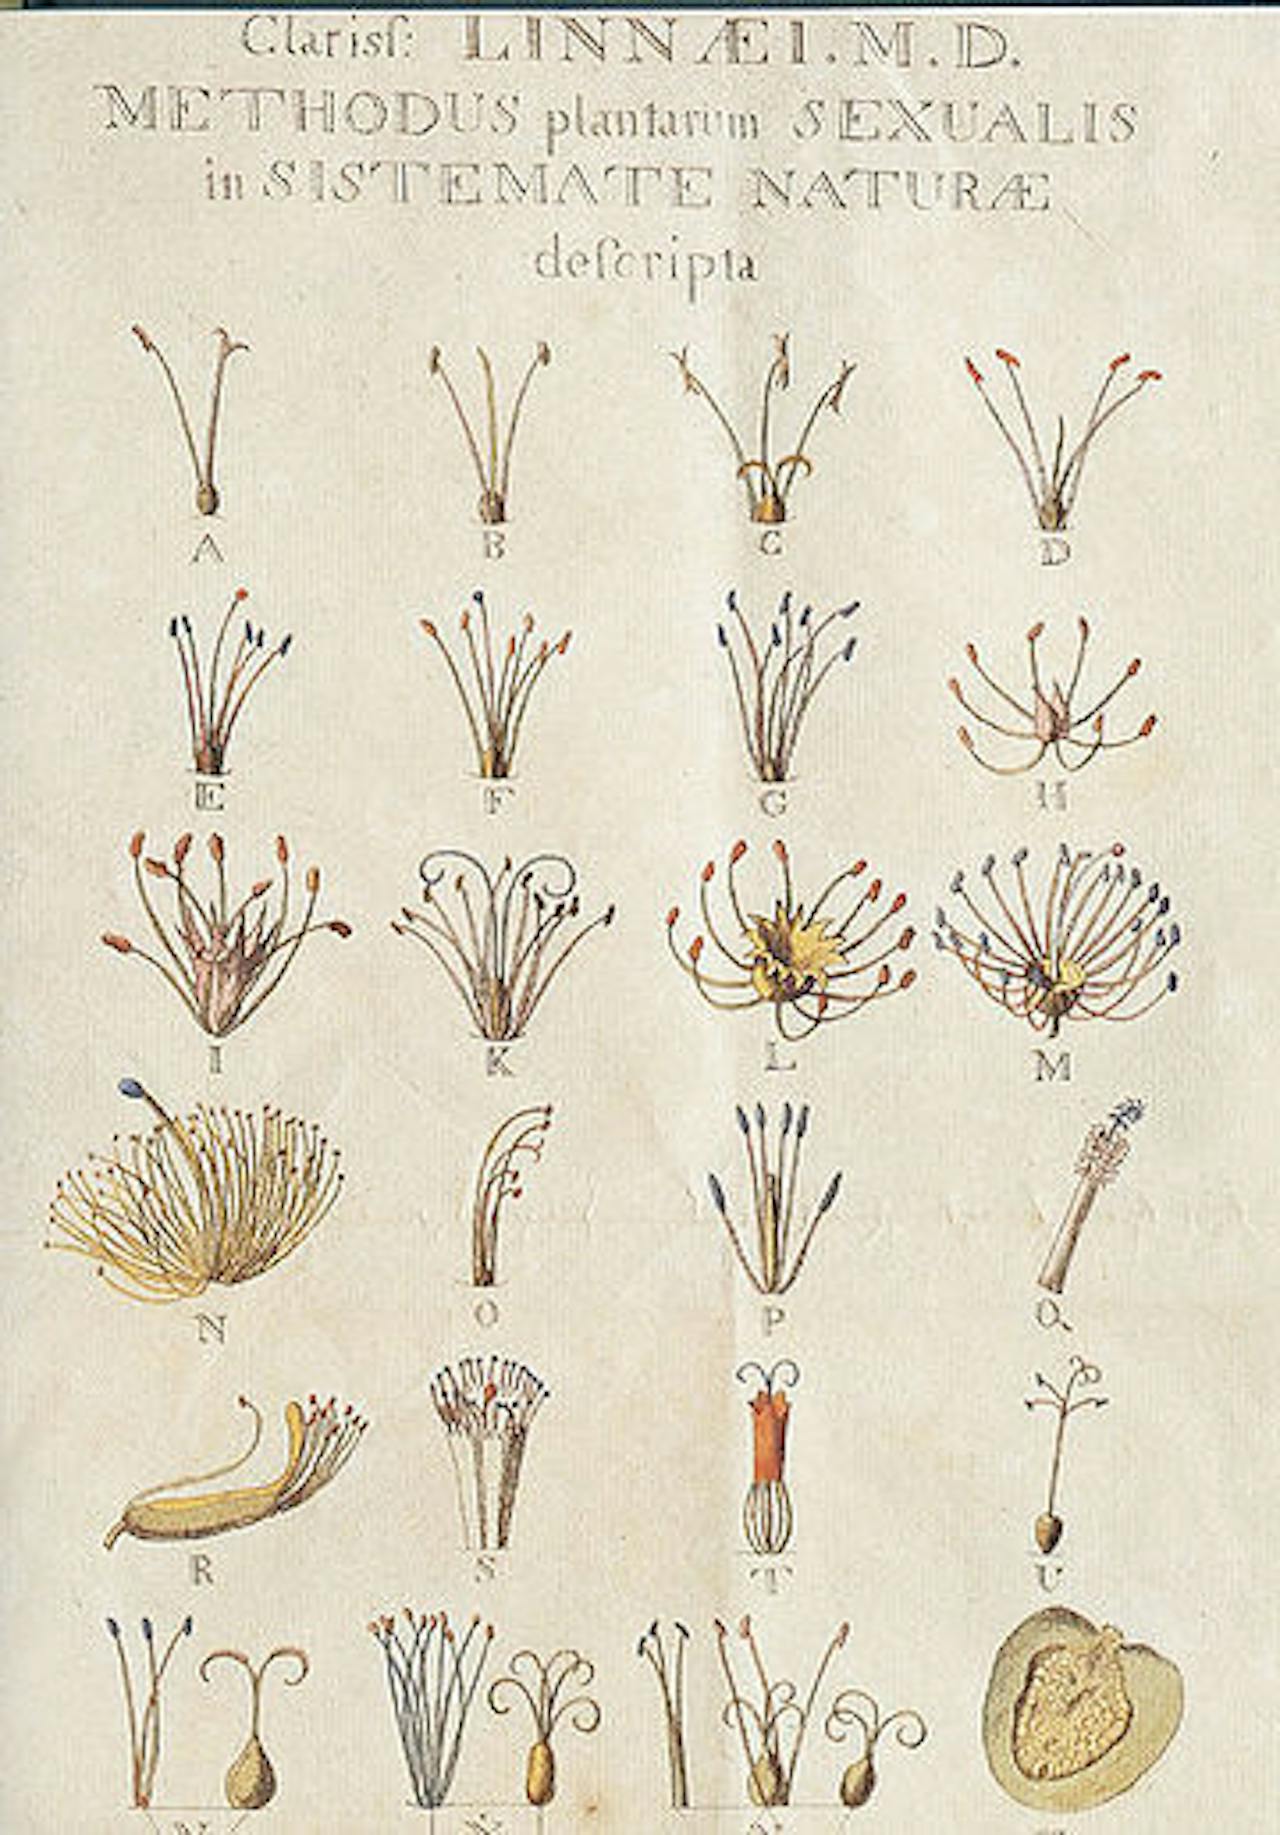 De voortplantingsorganen van planten, getekend door Linnaeus.